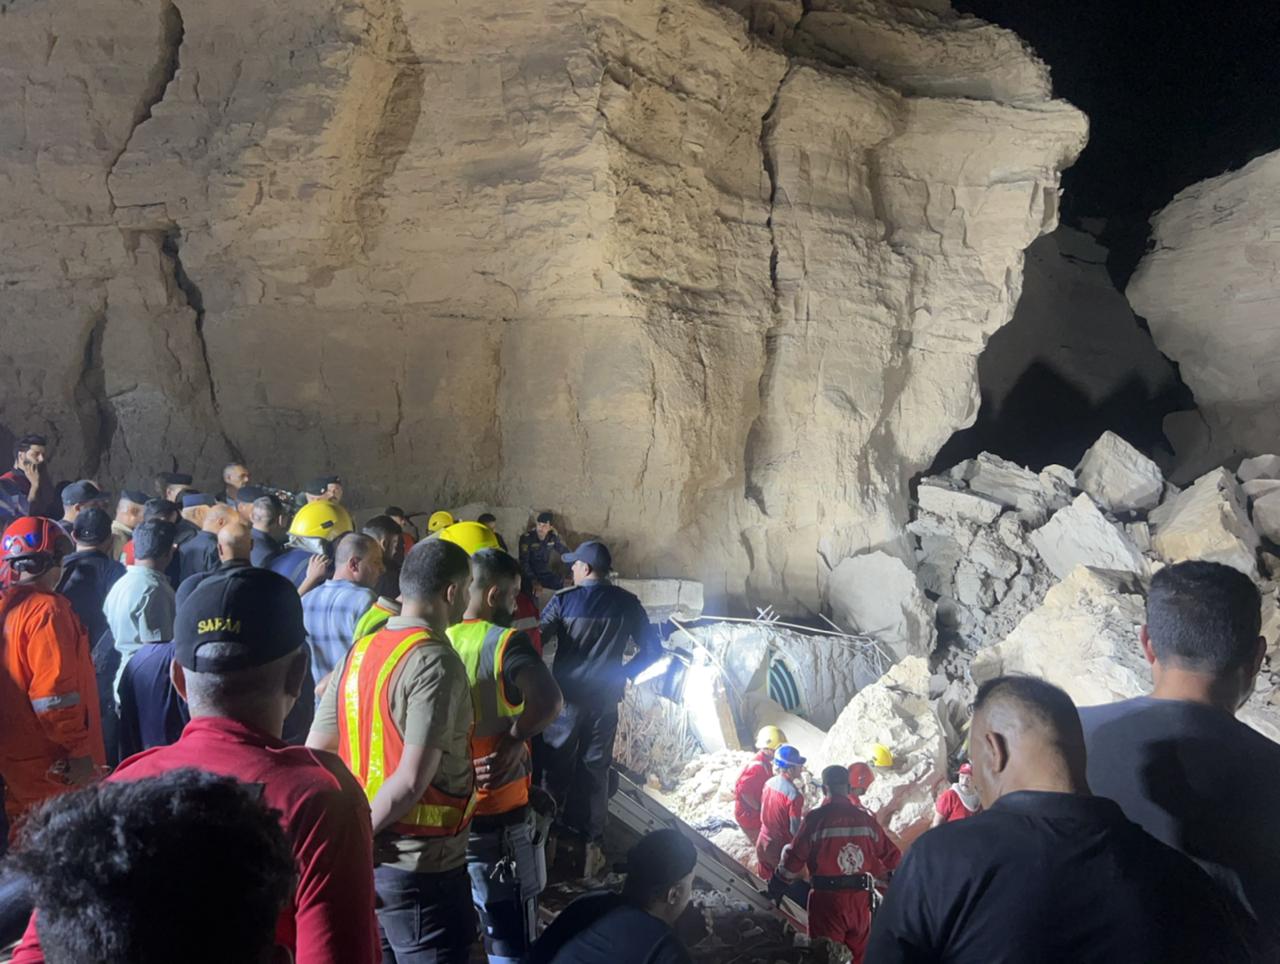 Frantic rescue effort under way at Iraq shrine hit by landslide